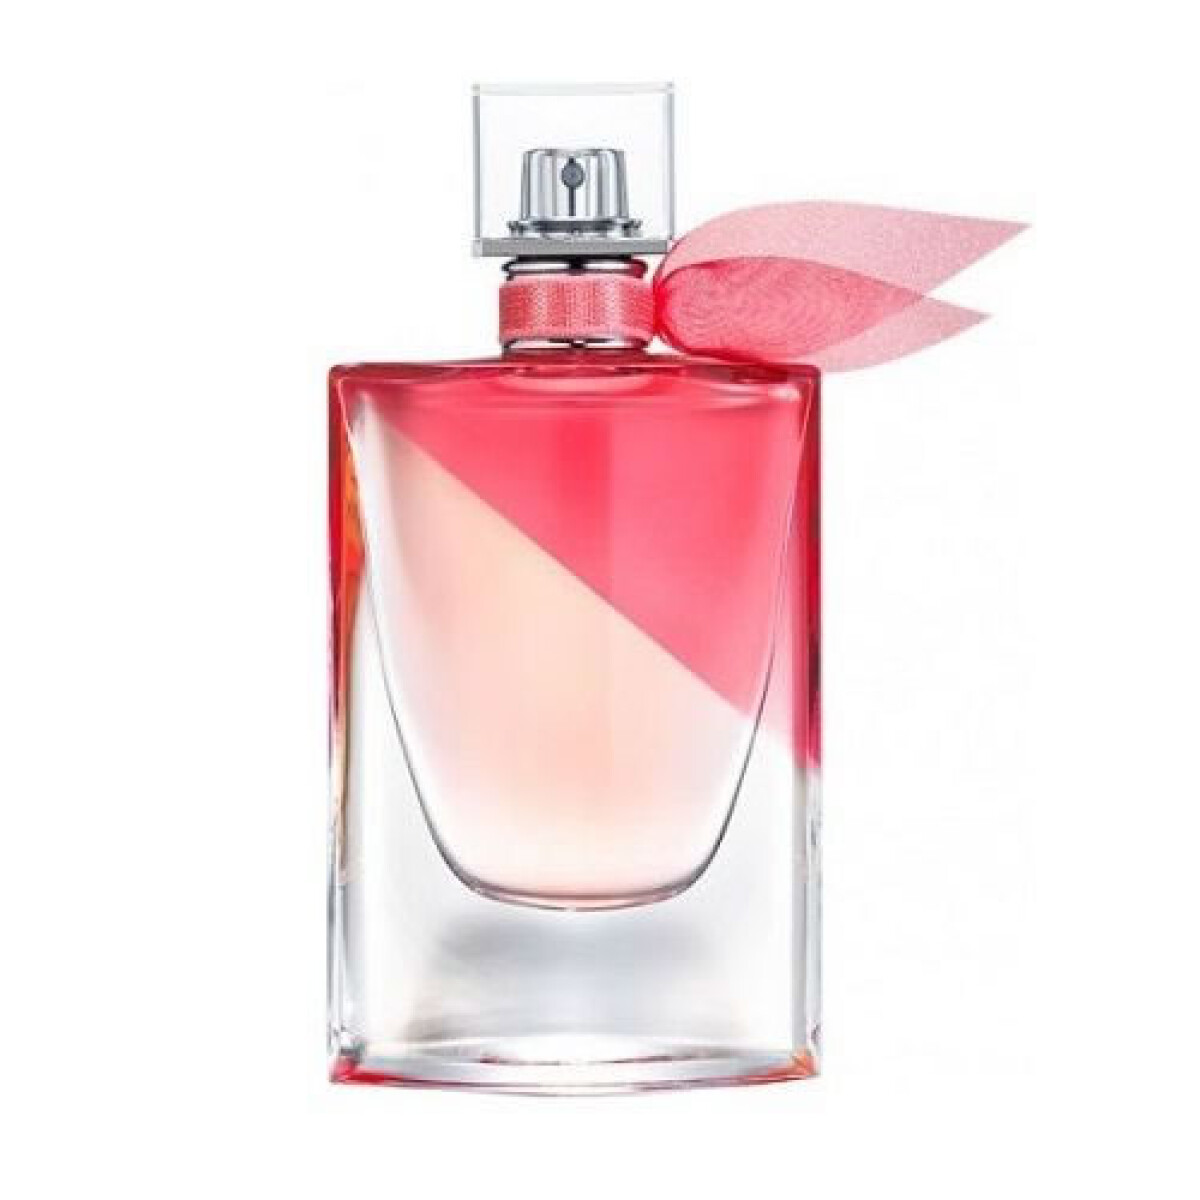 Perfume LANCOME LA VIE EST BELLE ROSE EDT 50 ml 